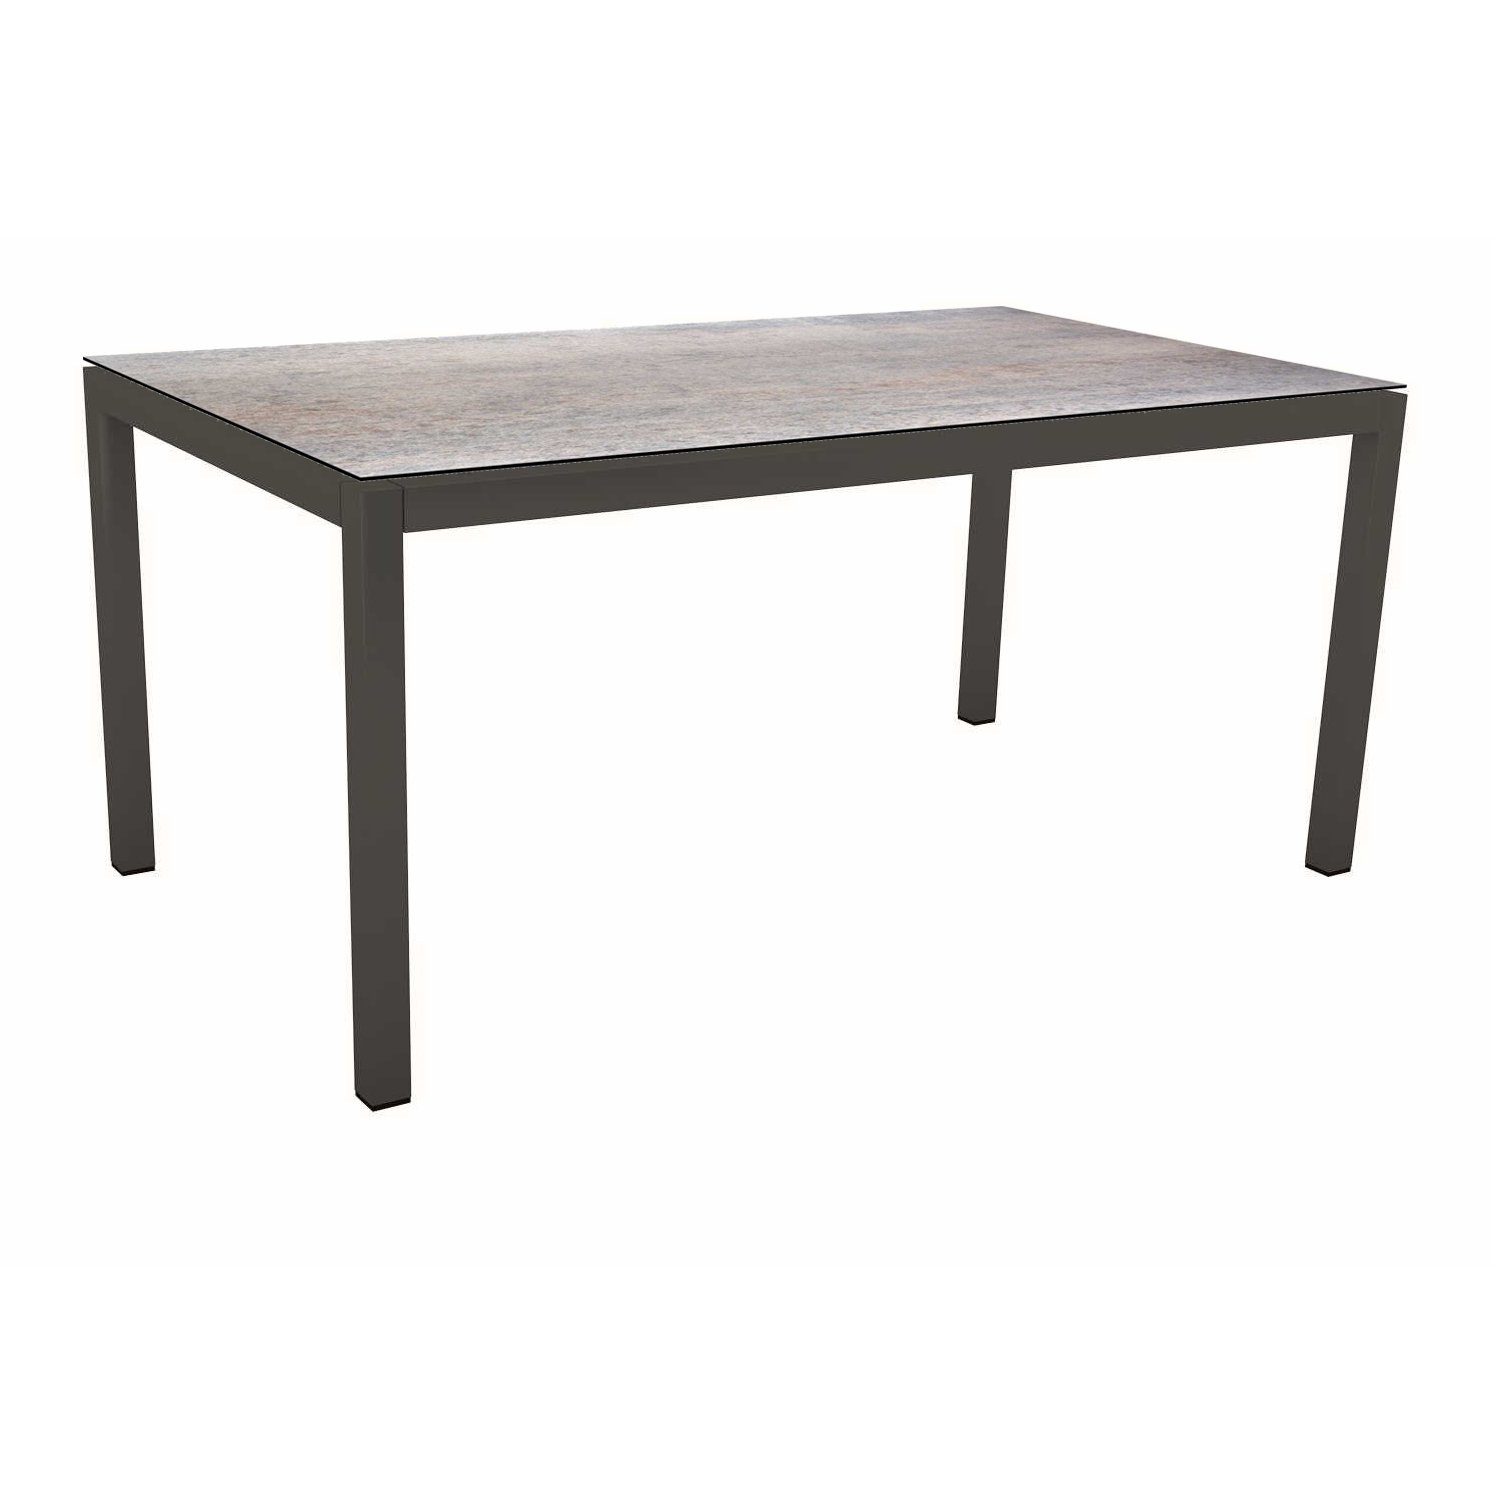 Stern Tischsystem Gartentisch, Gestell Aluminium anthrazit, Tischplatte HPL Smoky, Maße: 130x80 cm